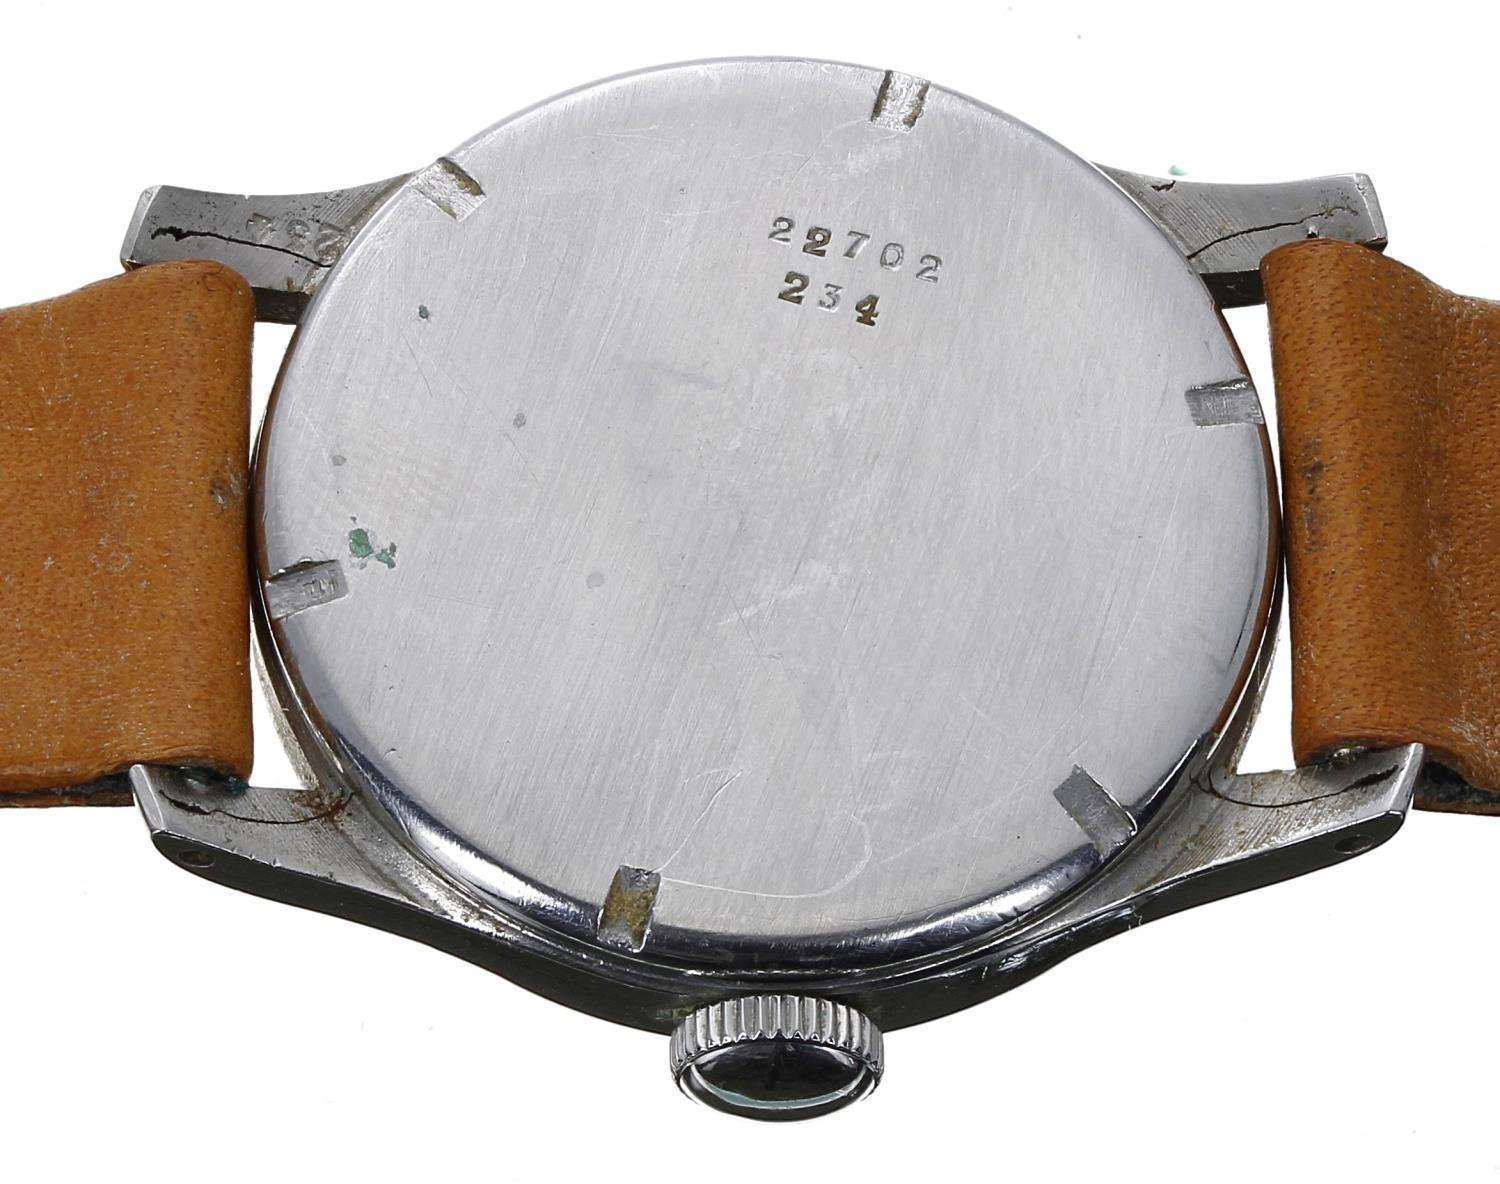 Longines WWII period stainless steel gentleman's wristwatch, case no. 22702 234, serial no. 6701xxx, - Bild 2 aus 2